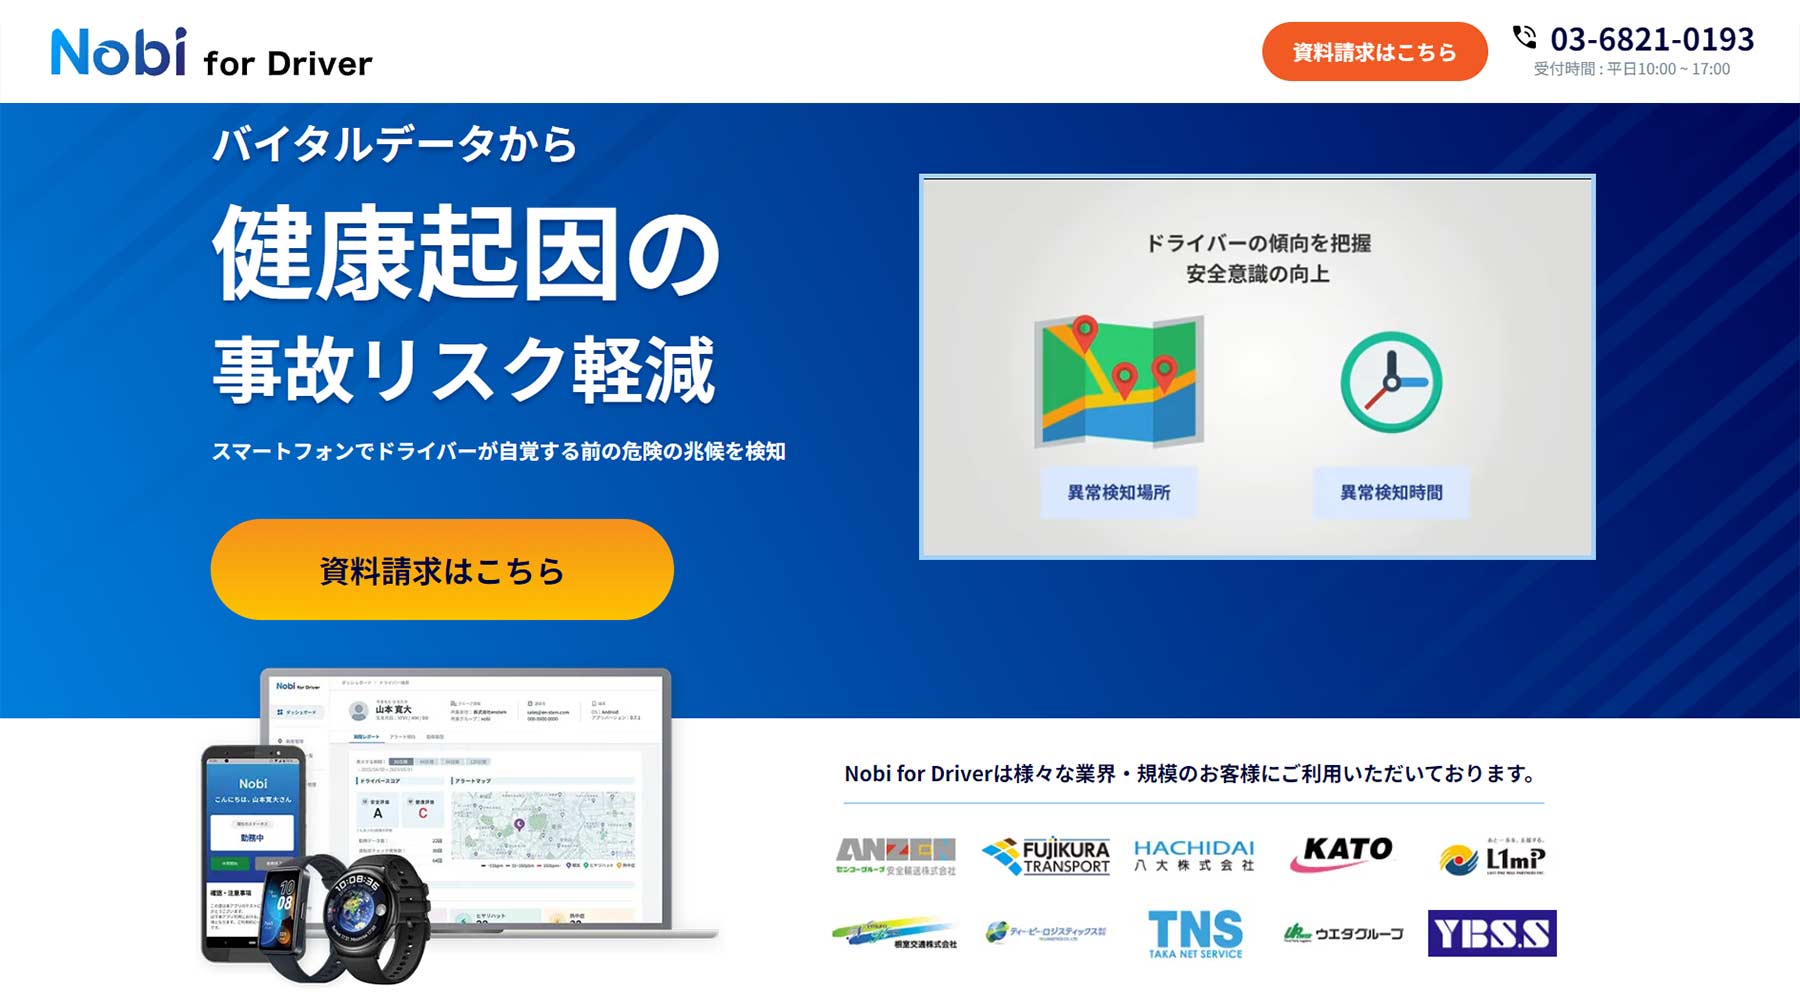 Nobi for Driver
公式Webサイト